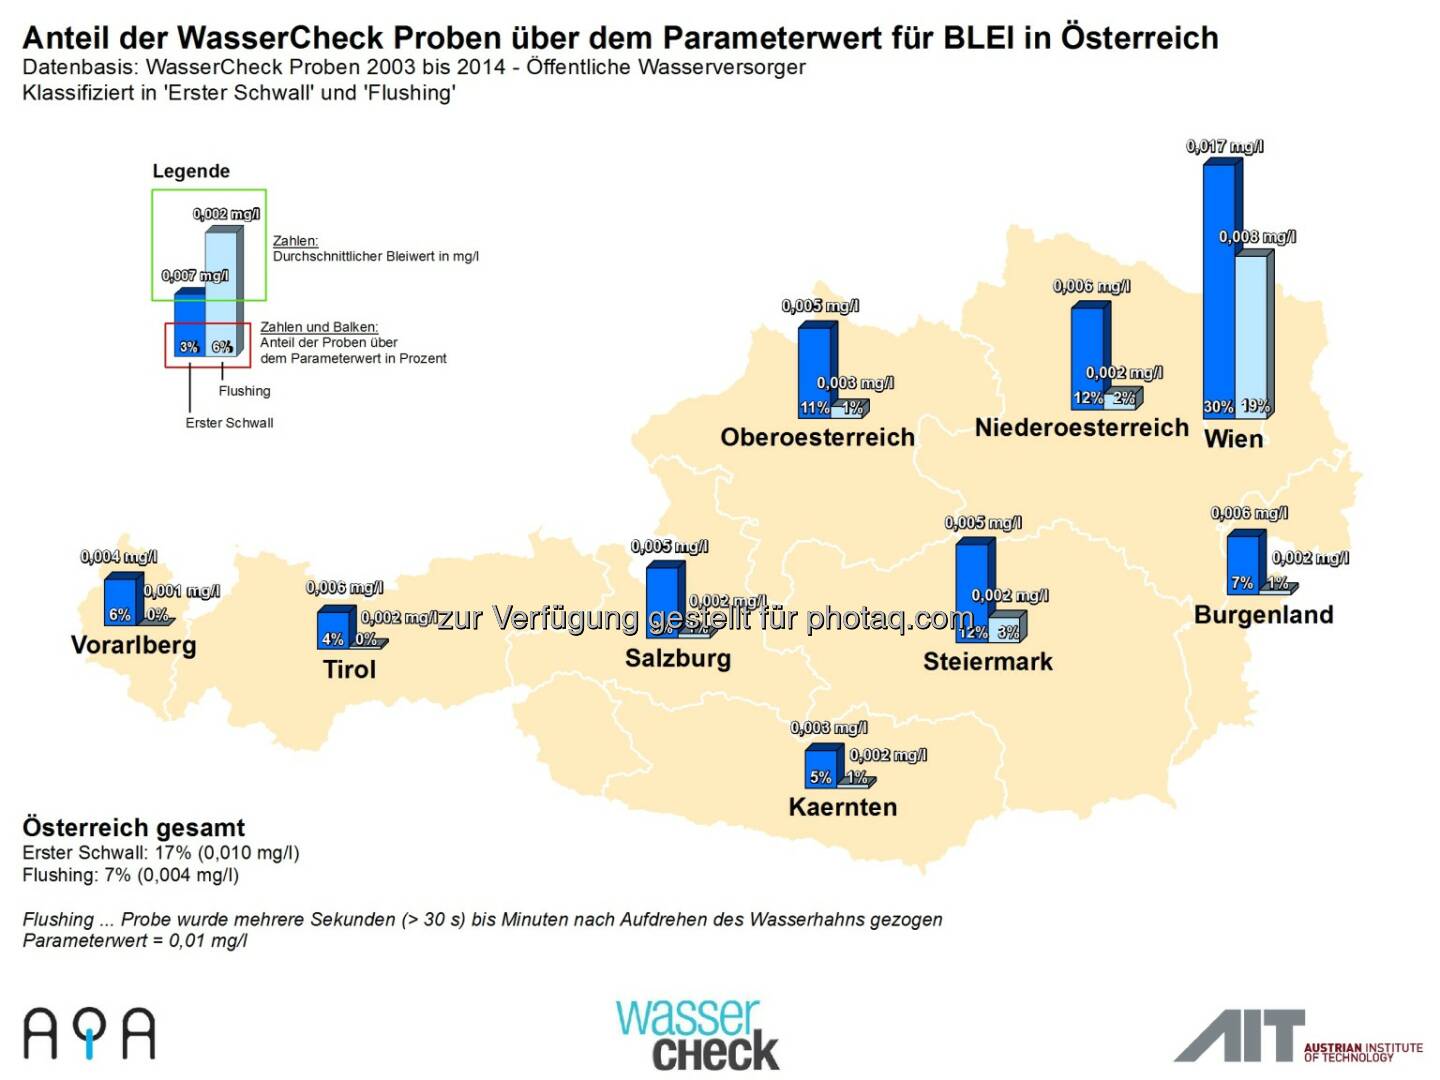 AQA GmbH: Zum Weltwassertag am 22.3.: Trinkwasser-Topqualität in Österreich ist nicht selbstverständlich: Bleianteil im Trinkwasser